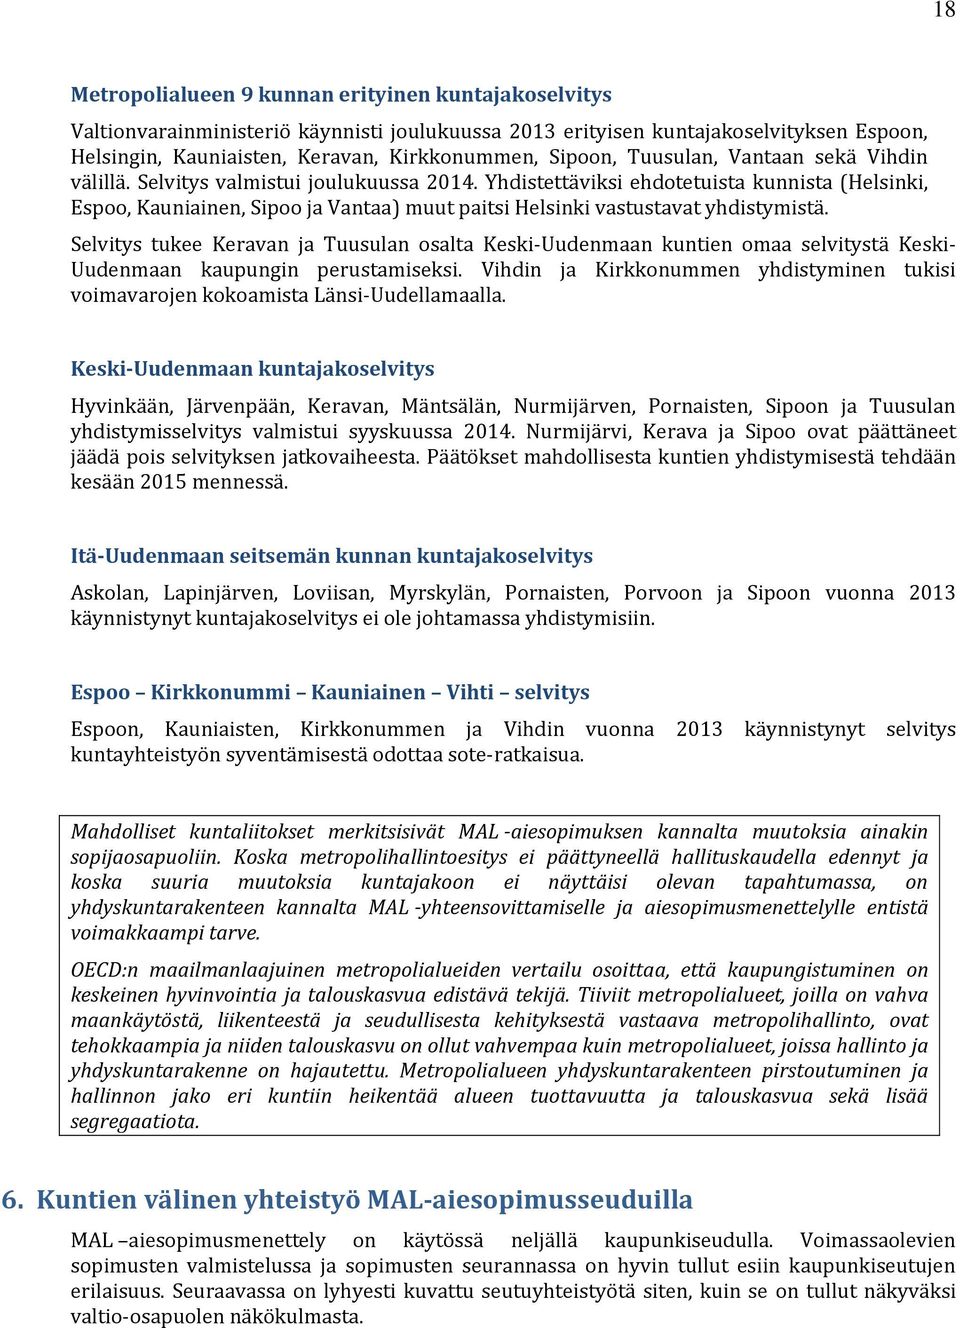 Yhdistettäviksi ehdotetuista kunnista (Helsinki, Espoo, Kauniainen, Sipoo ja Vantaa) muut paitsi Helsinki vastustavat yhdistymistä.